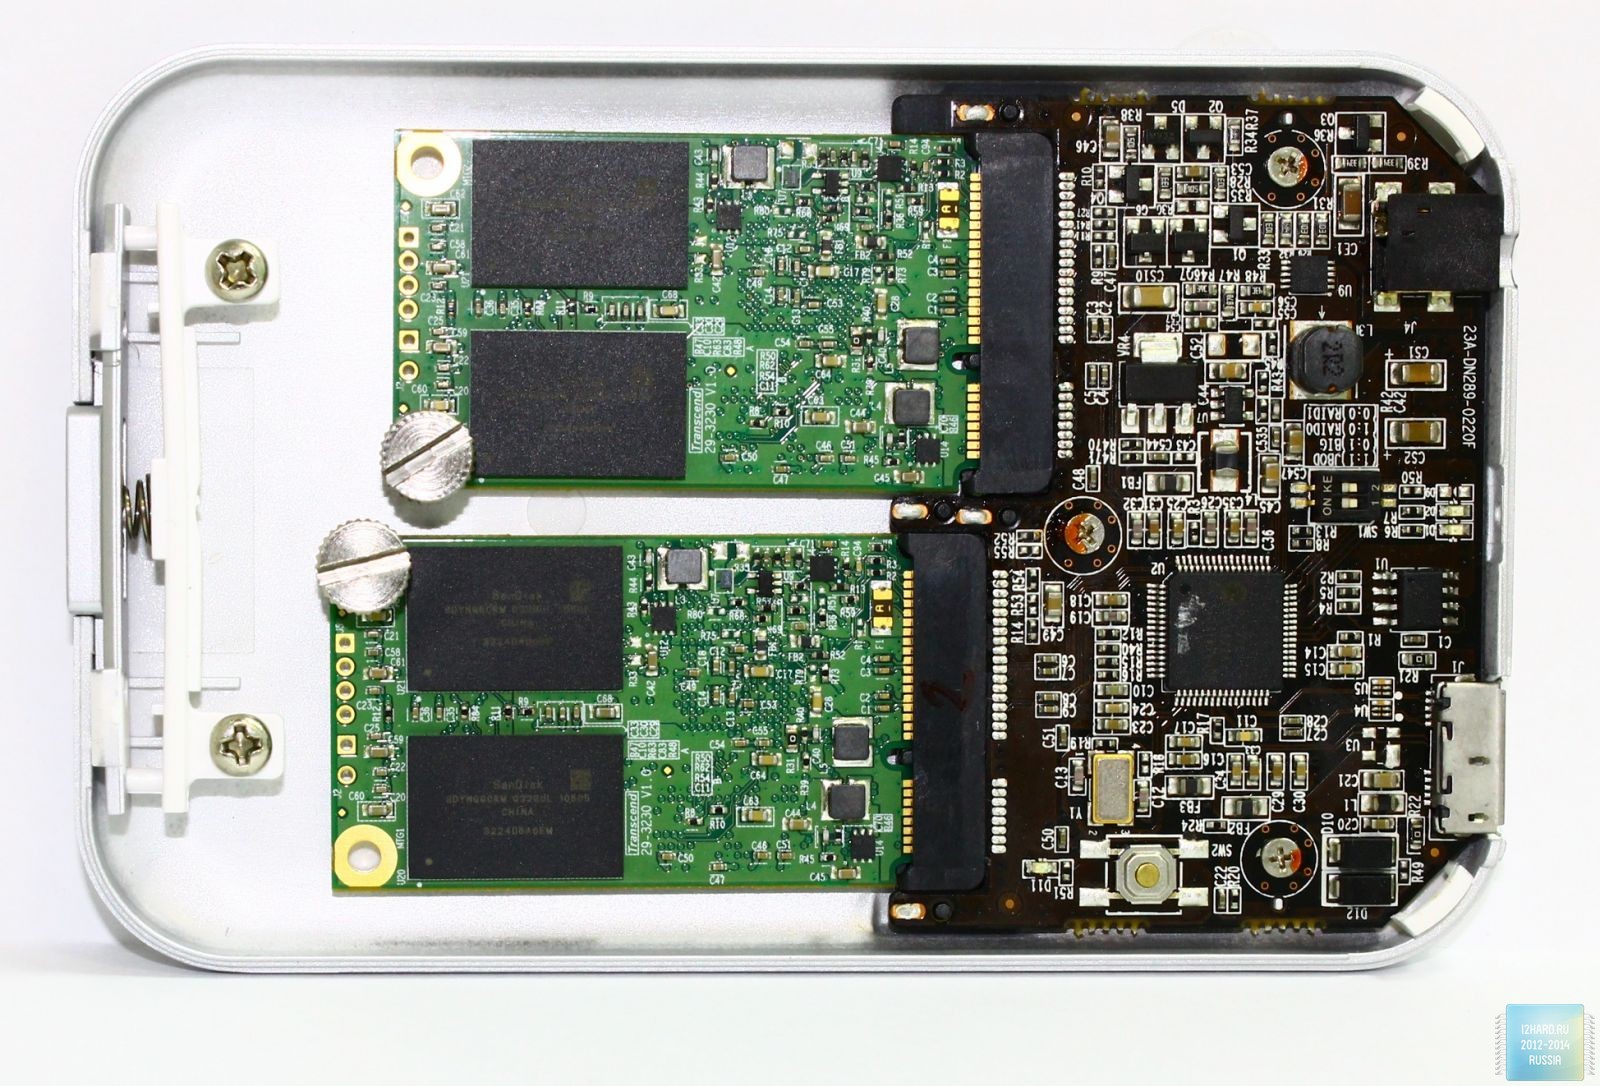 Флеш пам'ять представлена ​​модулями SanDisk SDYNQGCRM по 32 ГБ кожен та кеш пам'ять Samsung K4B2G1646E-BCK0 стандарту DDR3 і об'ємом 256 МБ